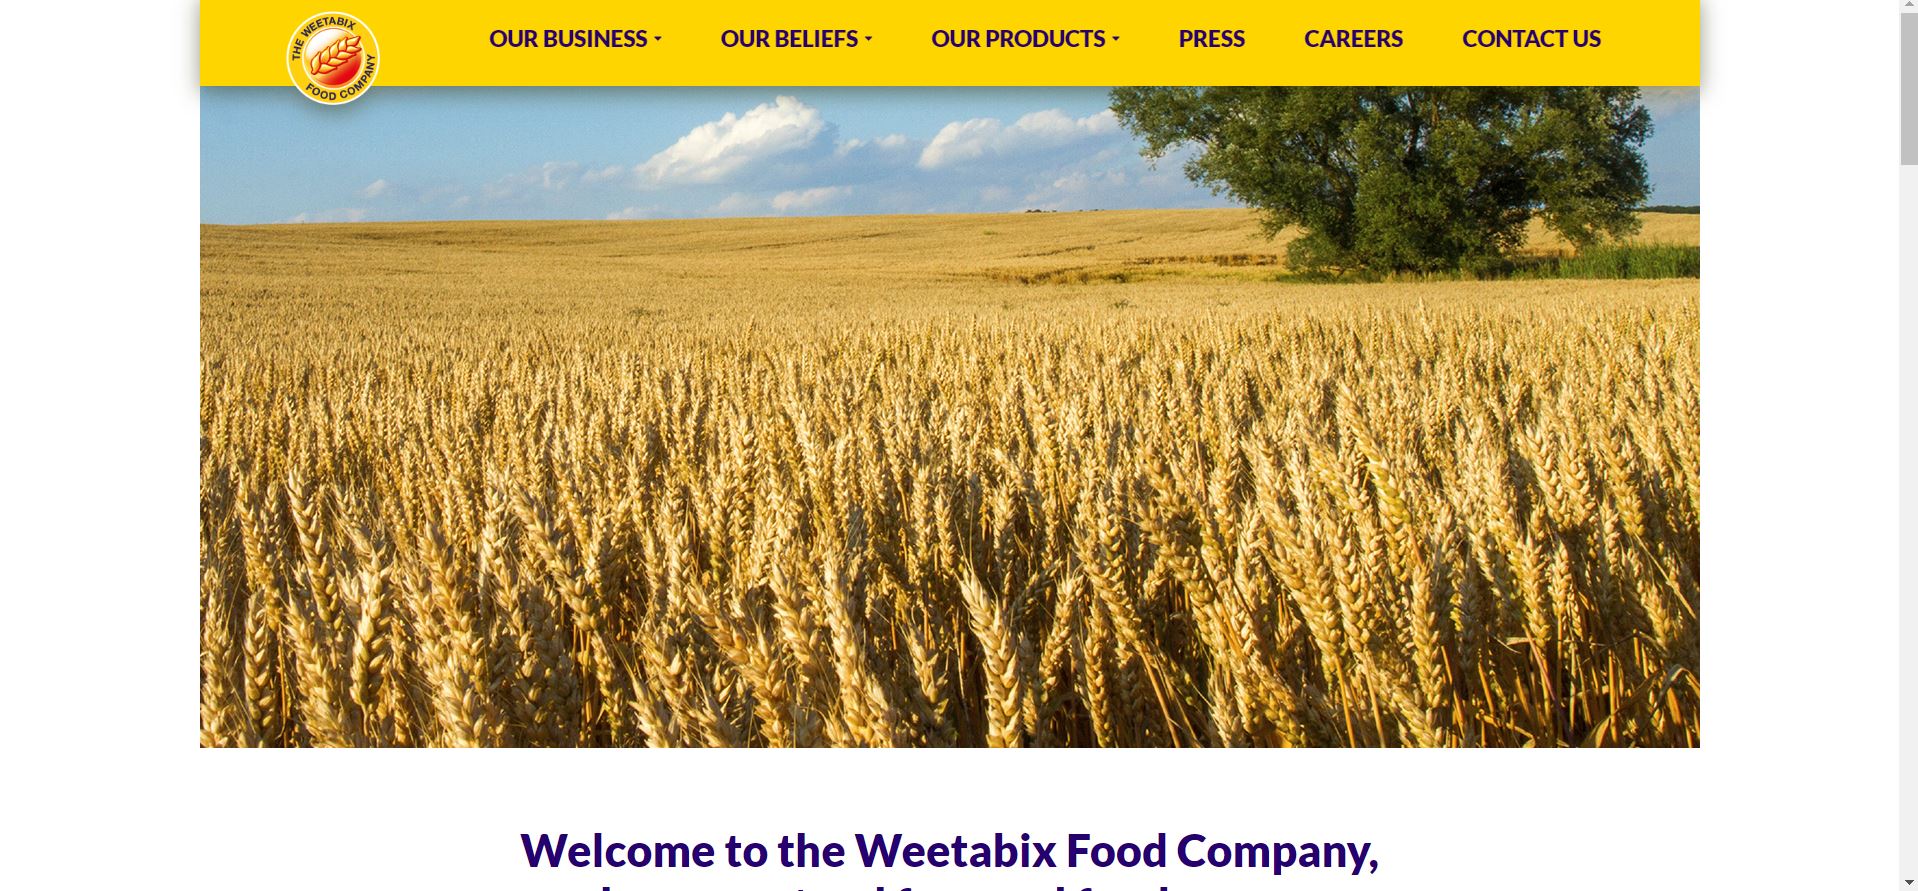 The Weetabix Food Company